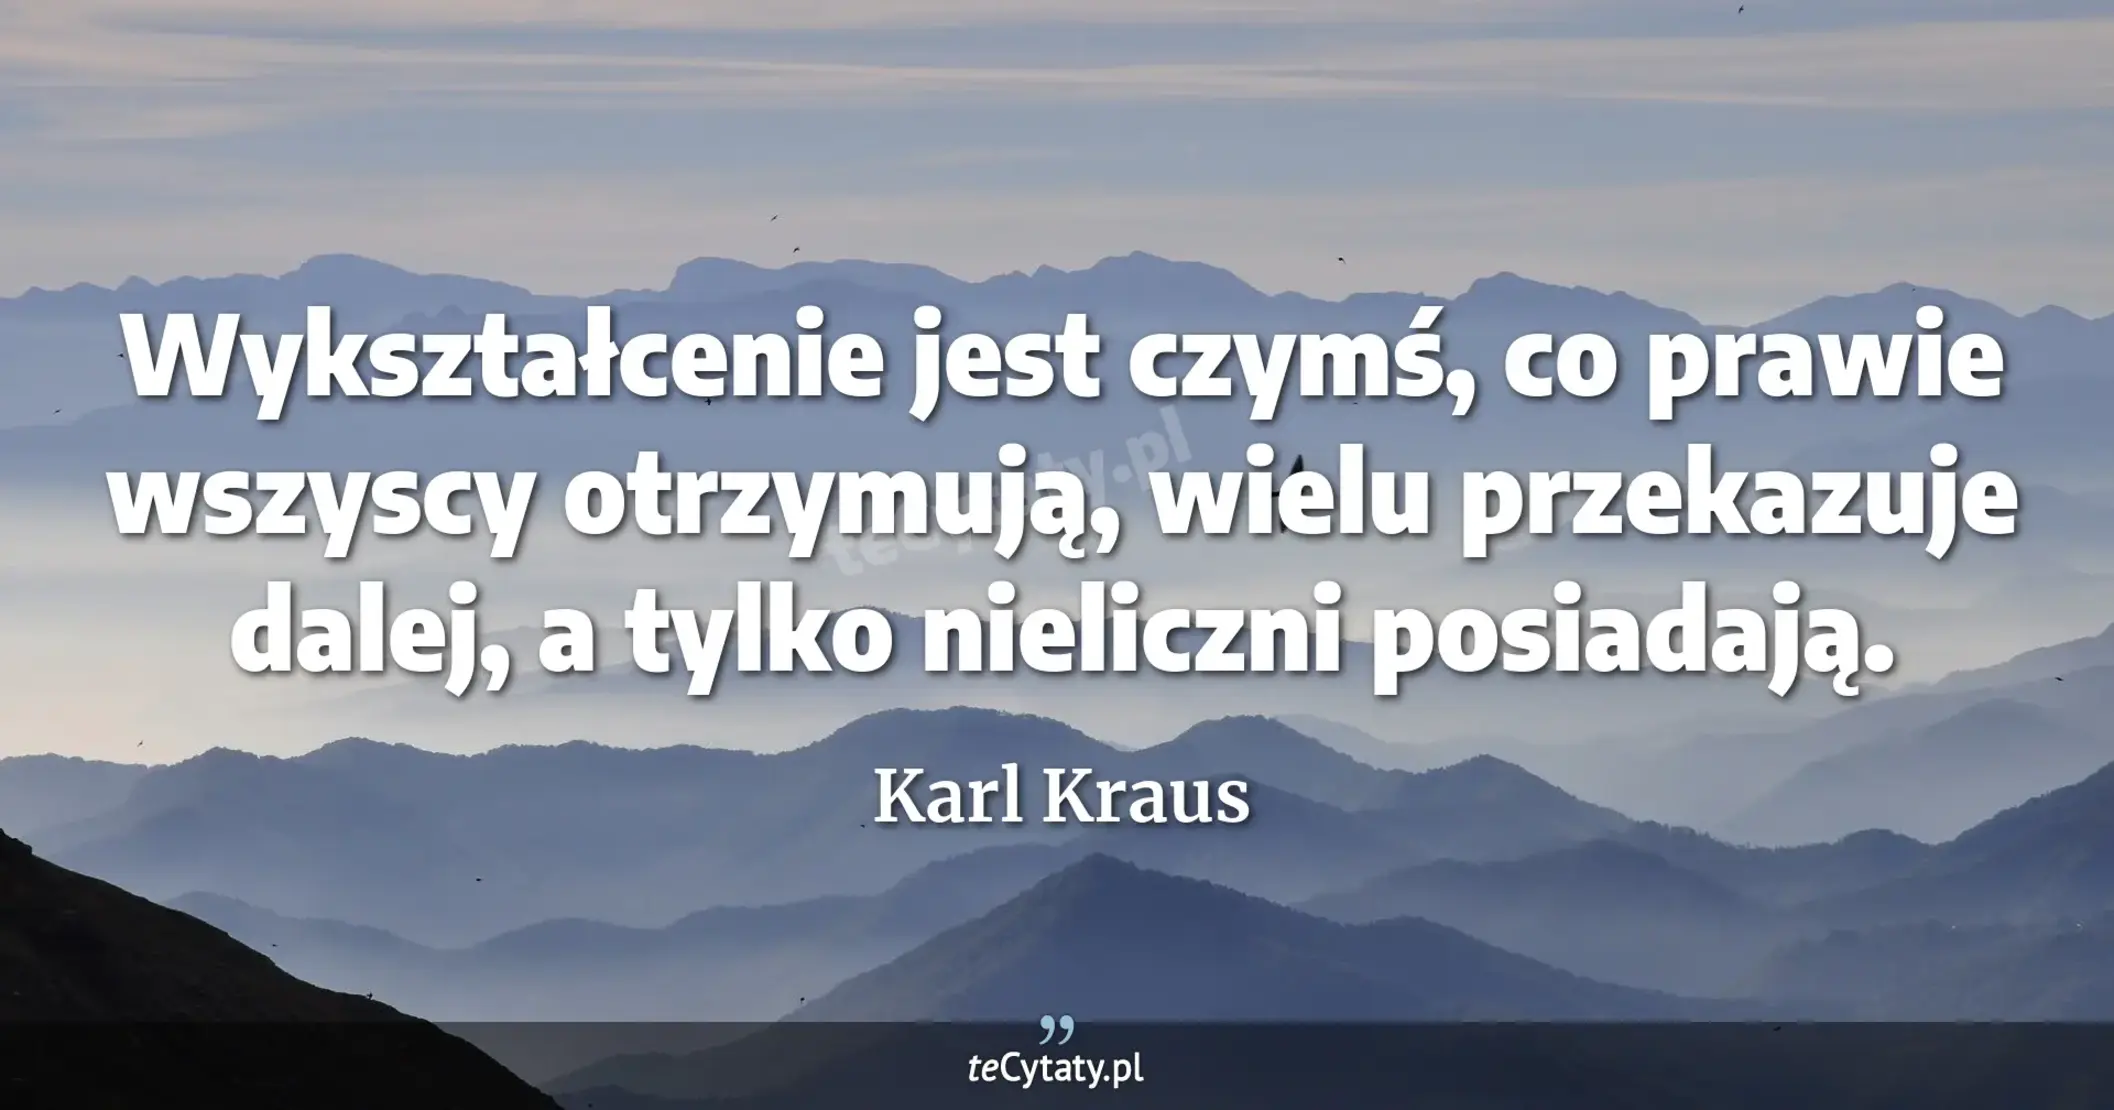 Wykształcenie jest czymś, co prawie wszyscy otrzymują, wielu przekazuje dalej, a tylko nieliczni posiadają. - Karl Kraus